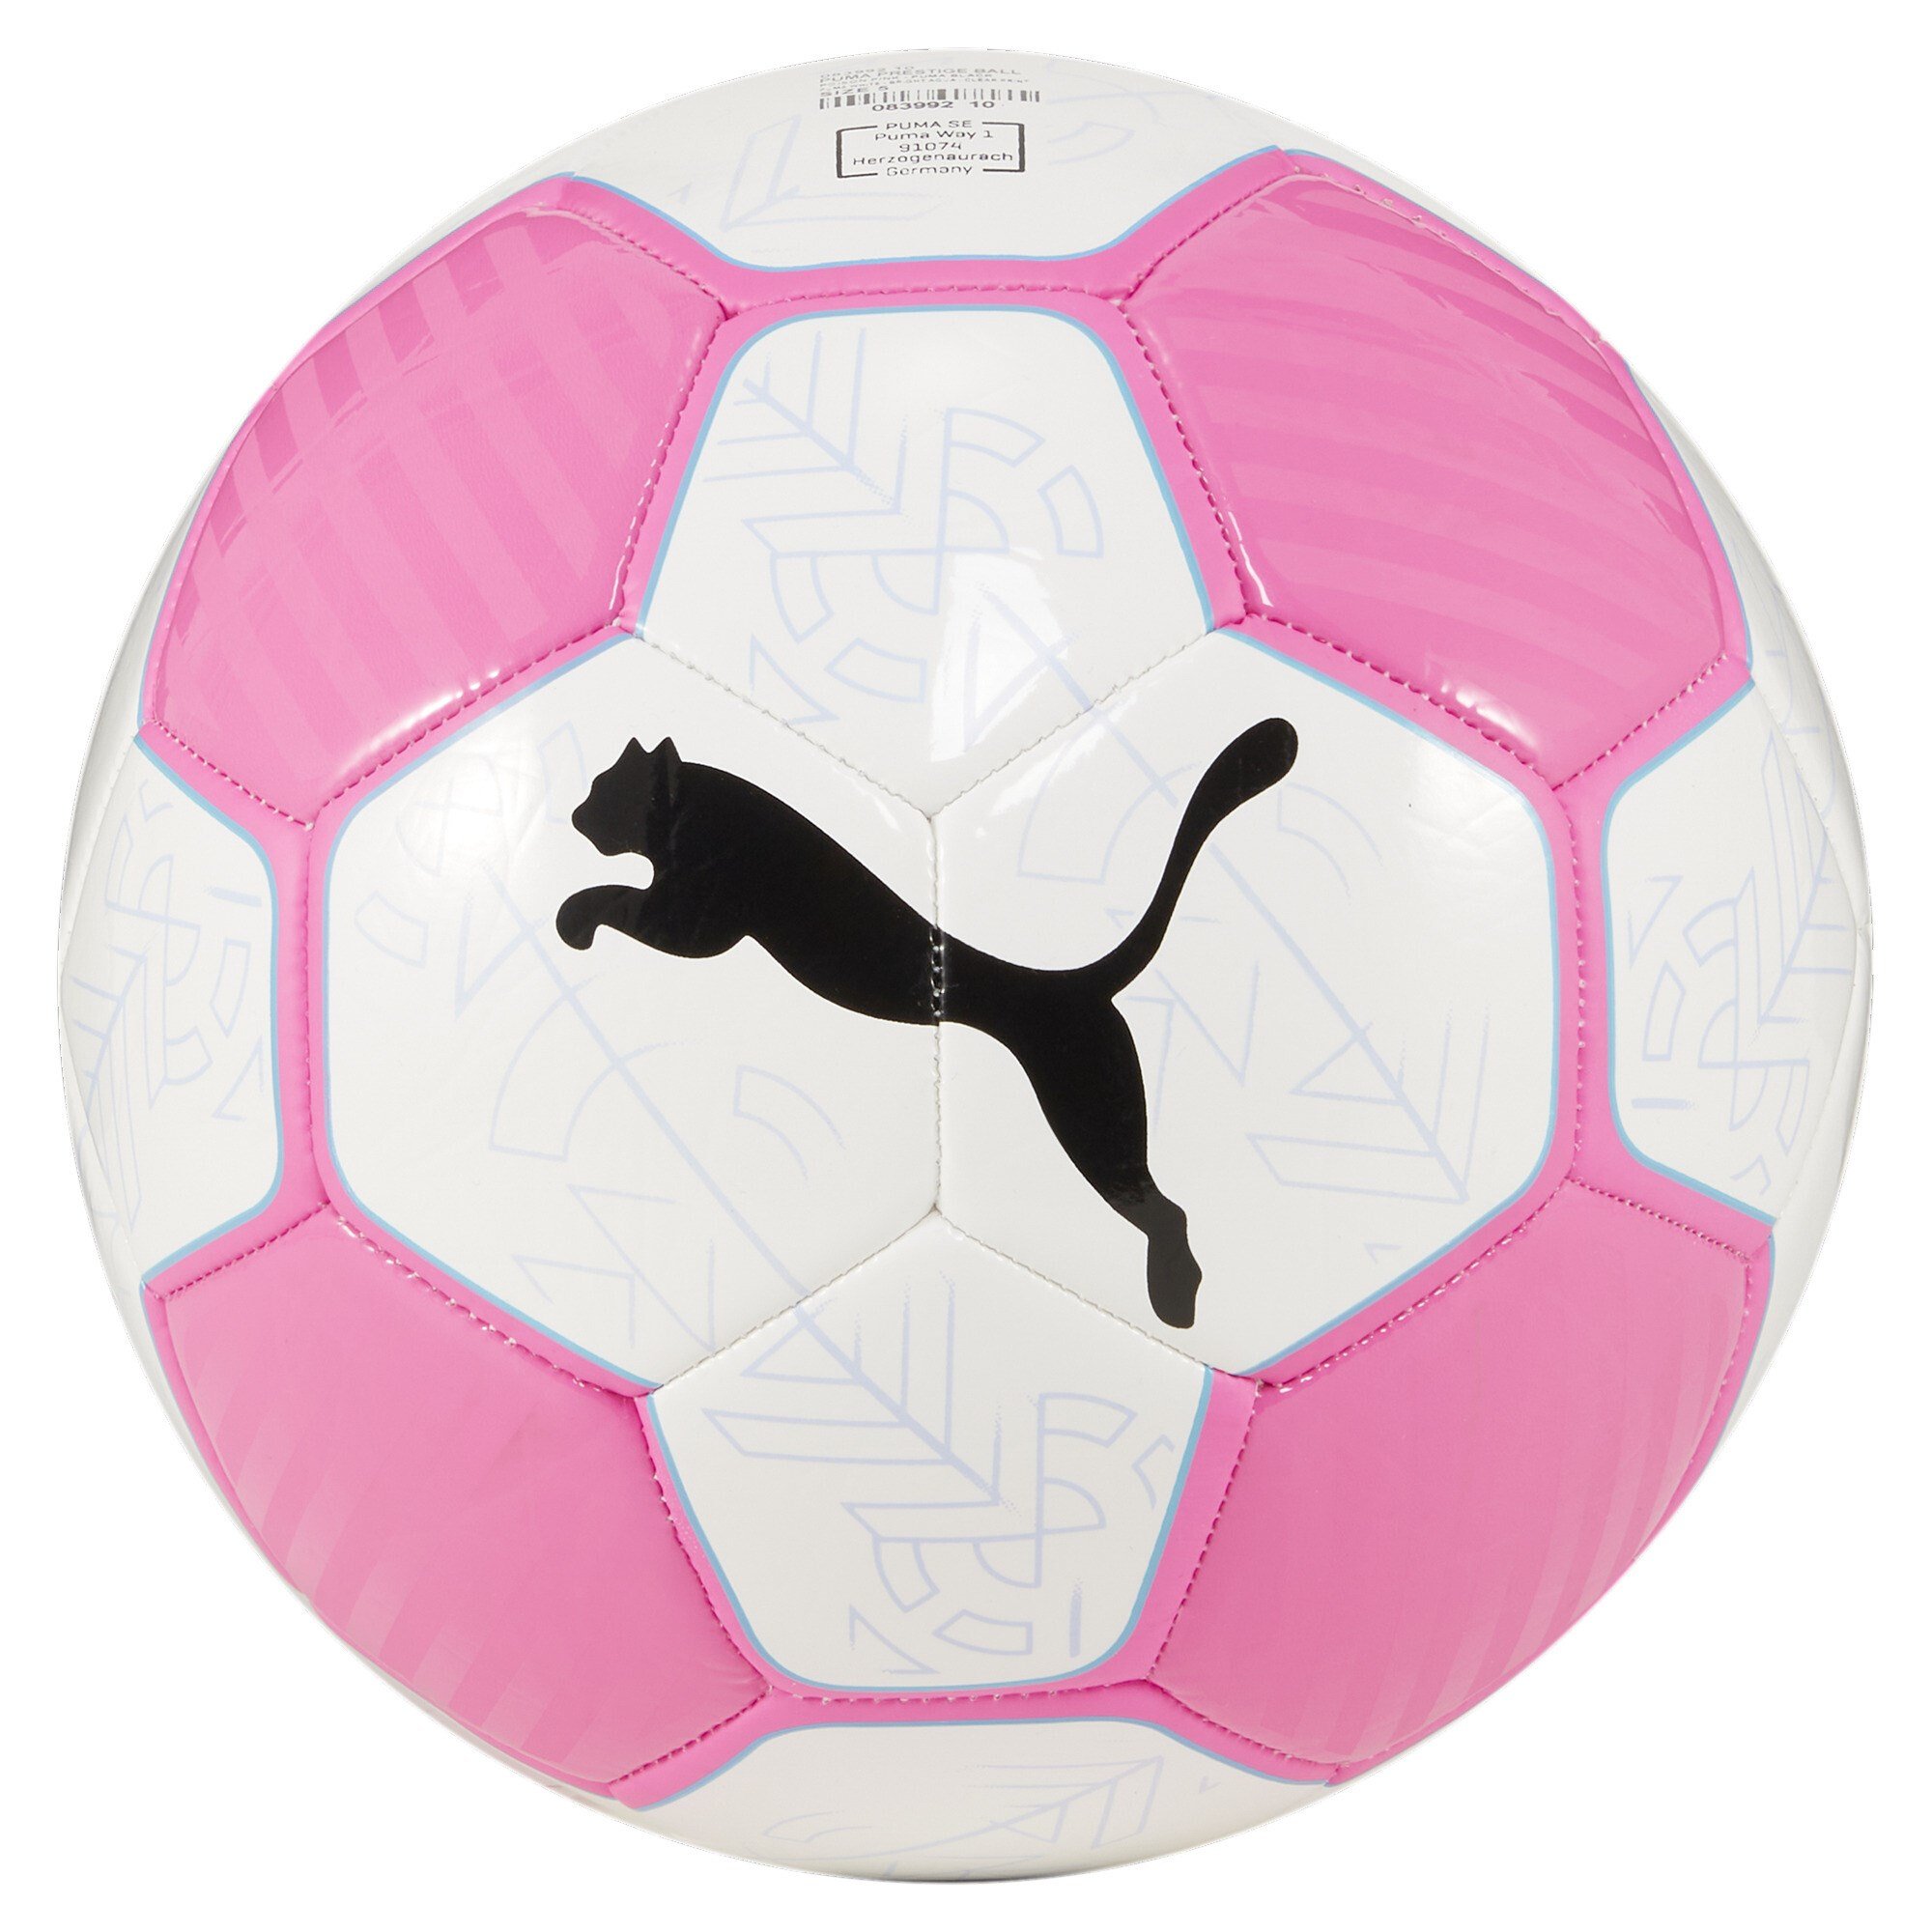 Puma voetbal Prestige - Maat 5 - wit/pink